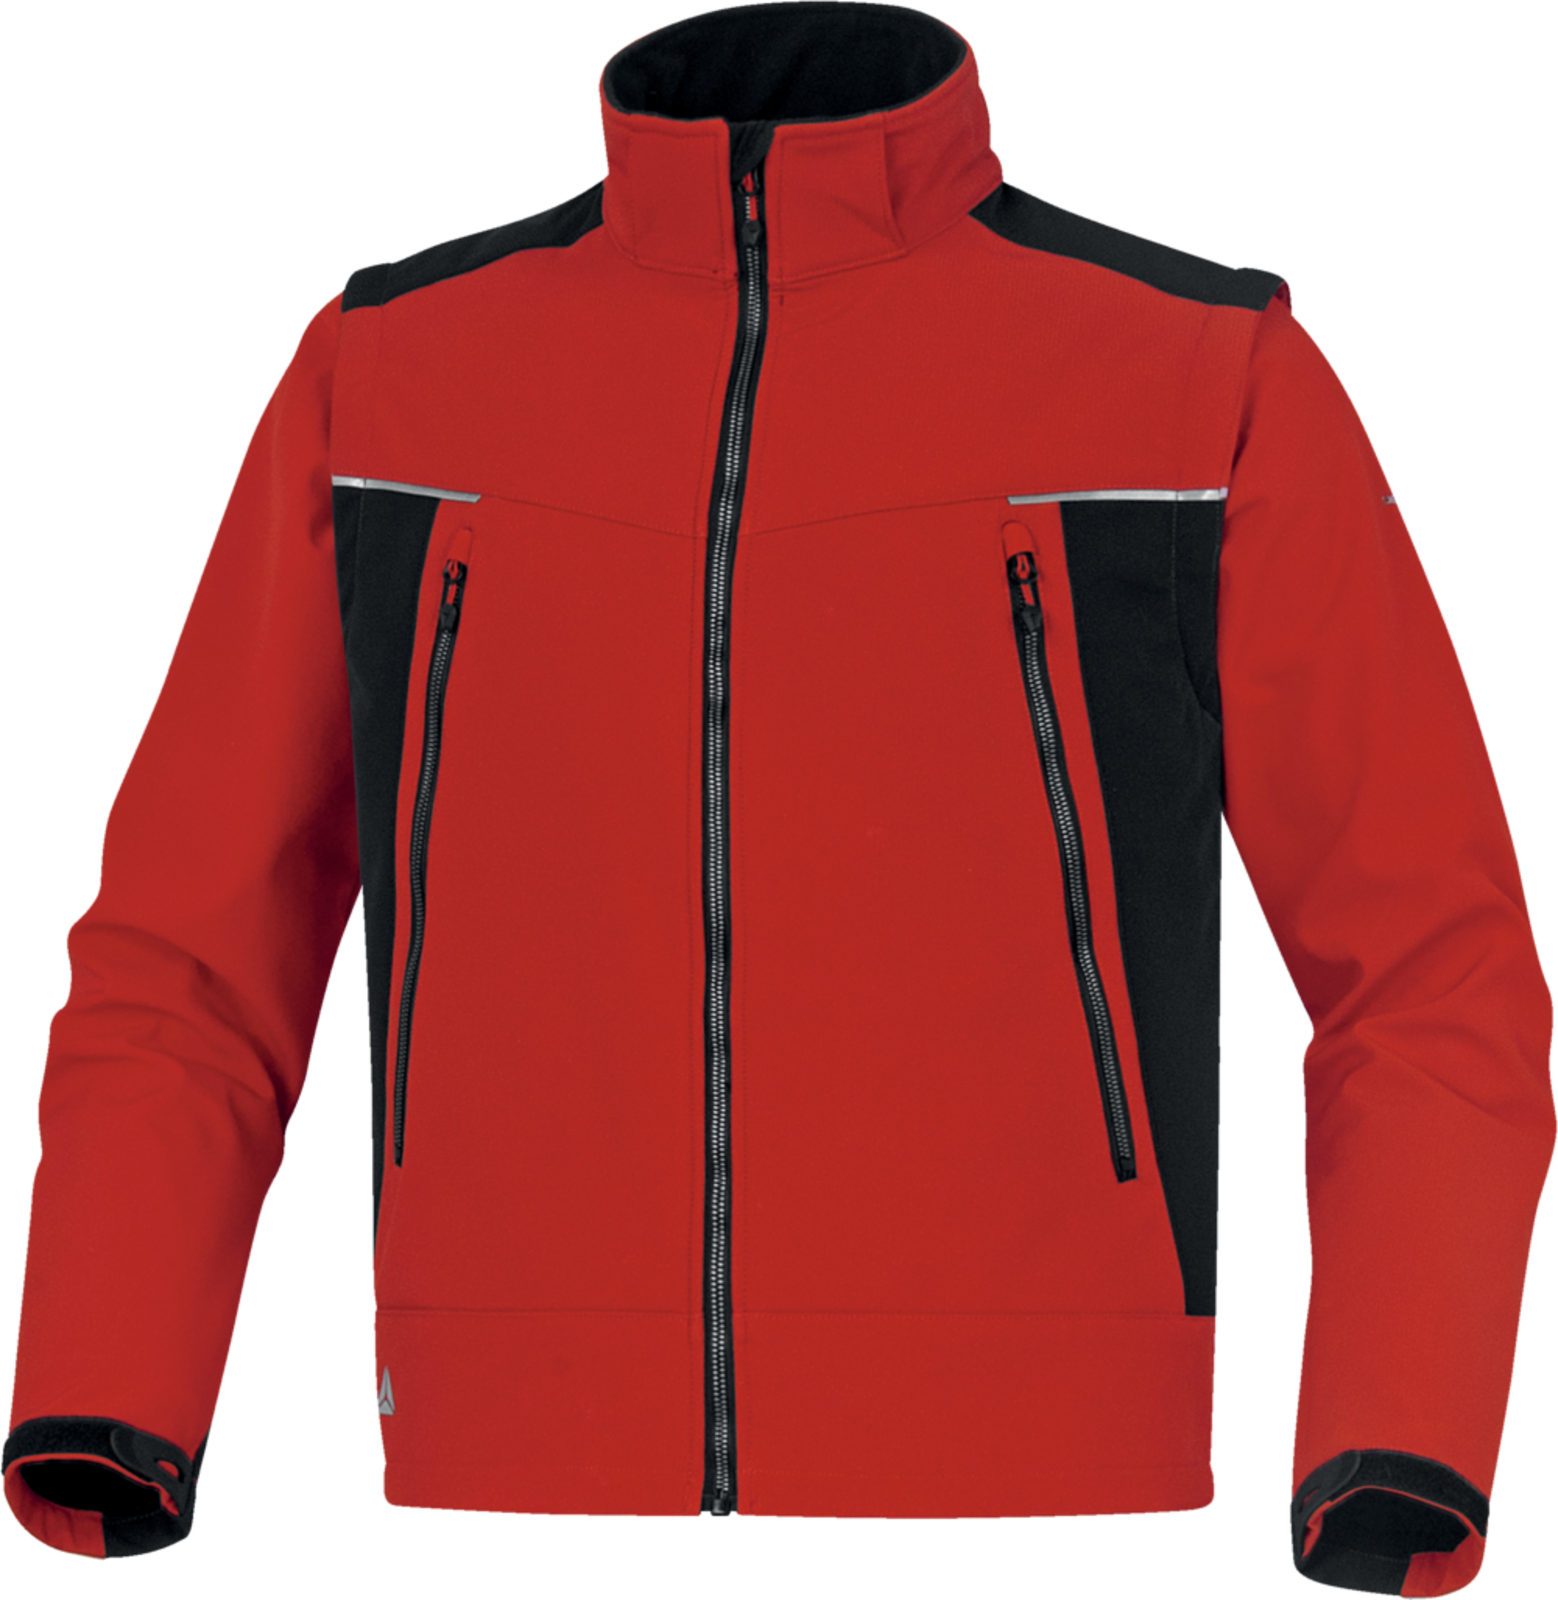 Softshellová bunda Delta Plus Orsa 2v1 - veľkosť: L, farba: červená/čierna